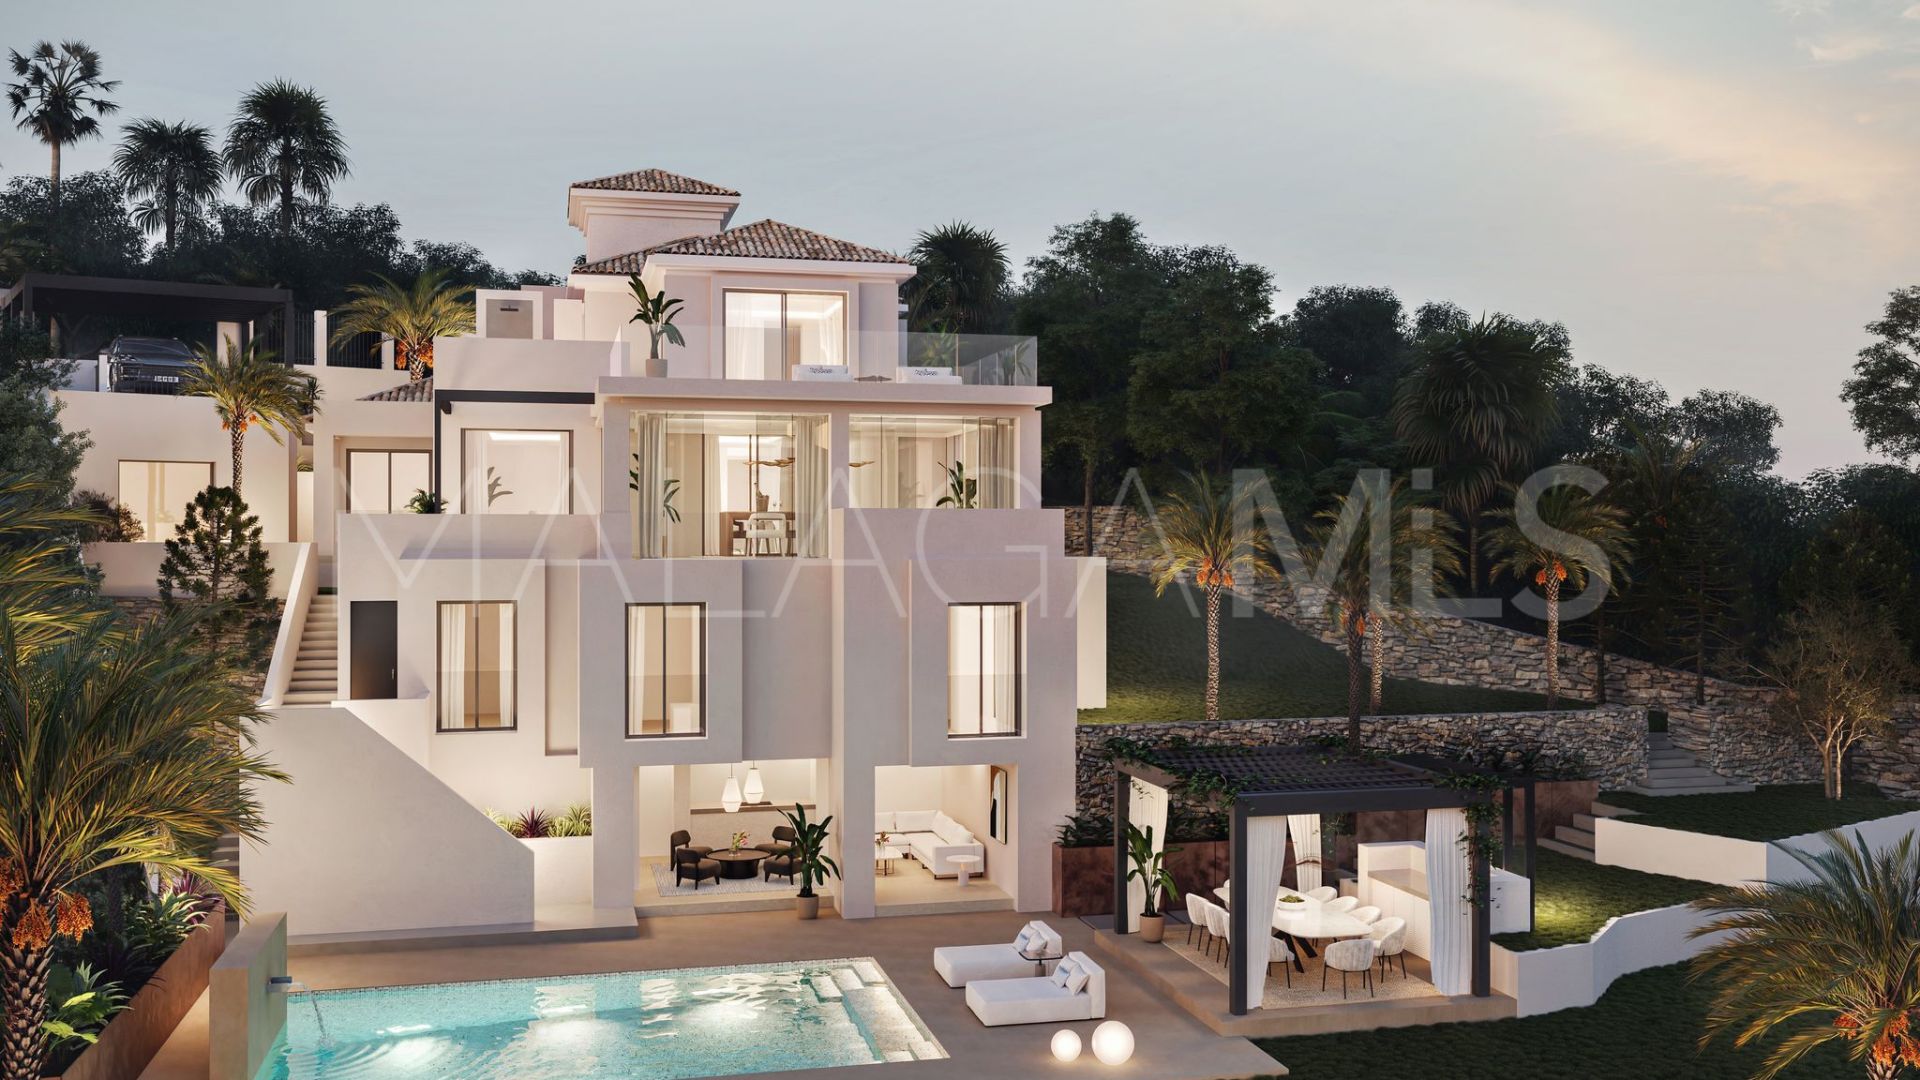 6 bedrooms villa in Los Naranjos Hill Club for sale